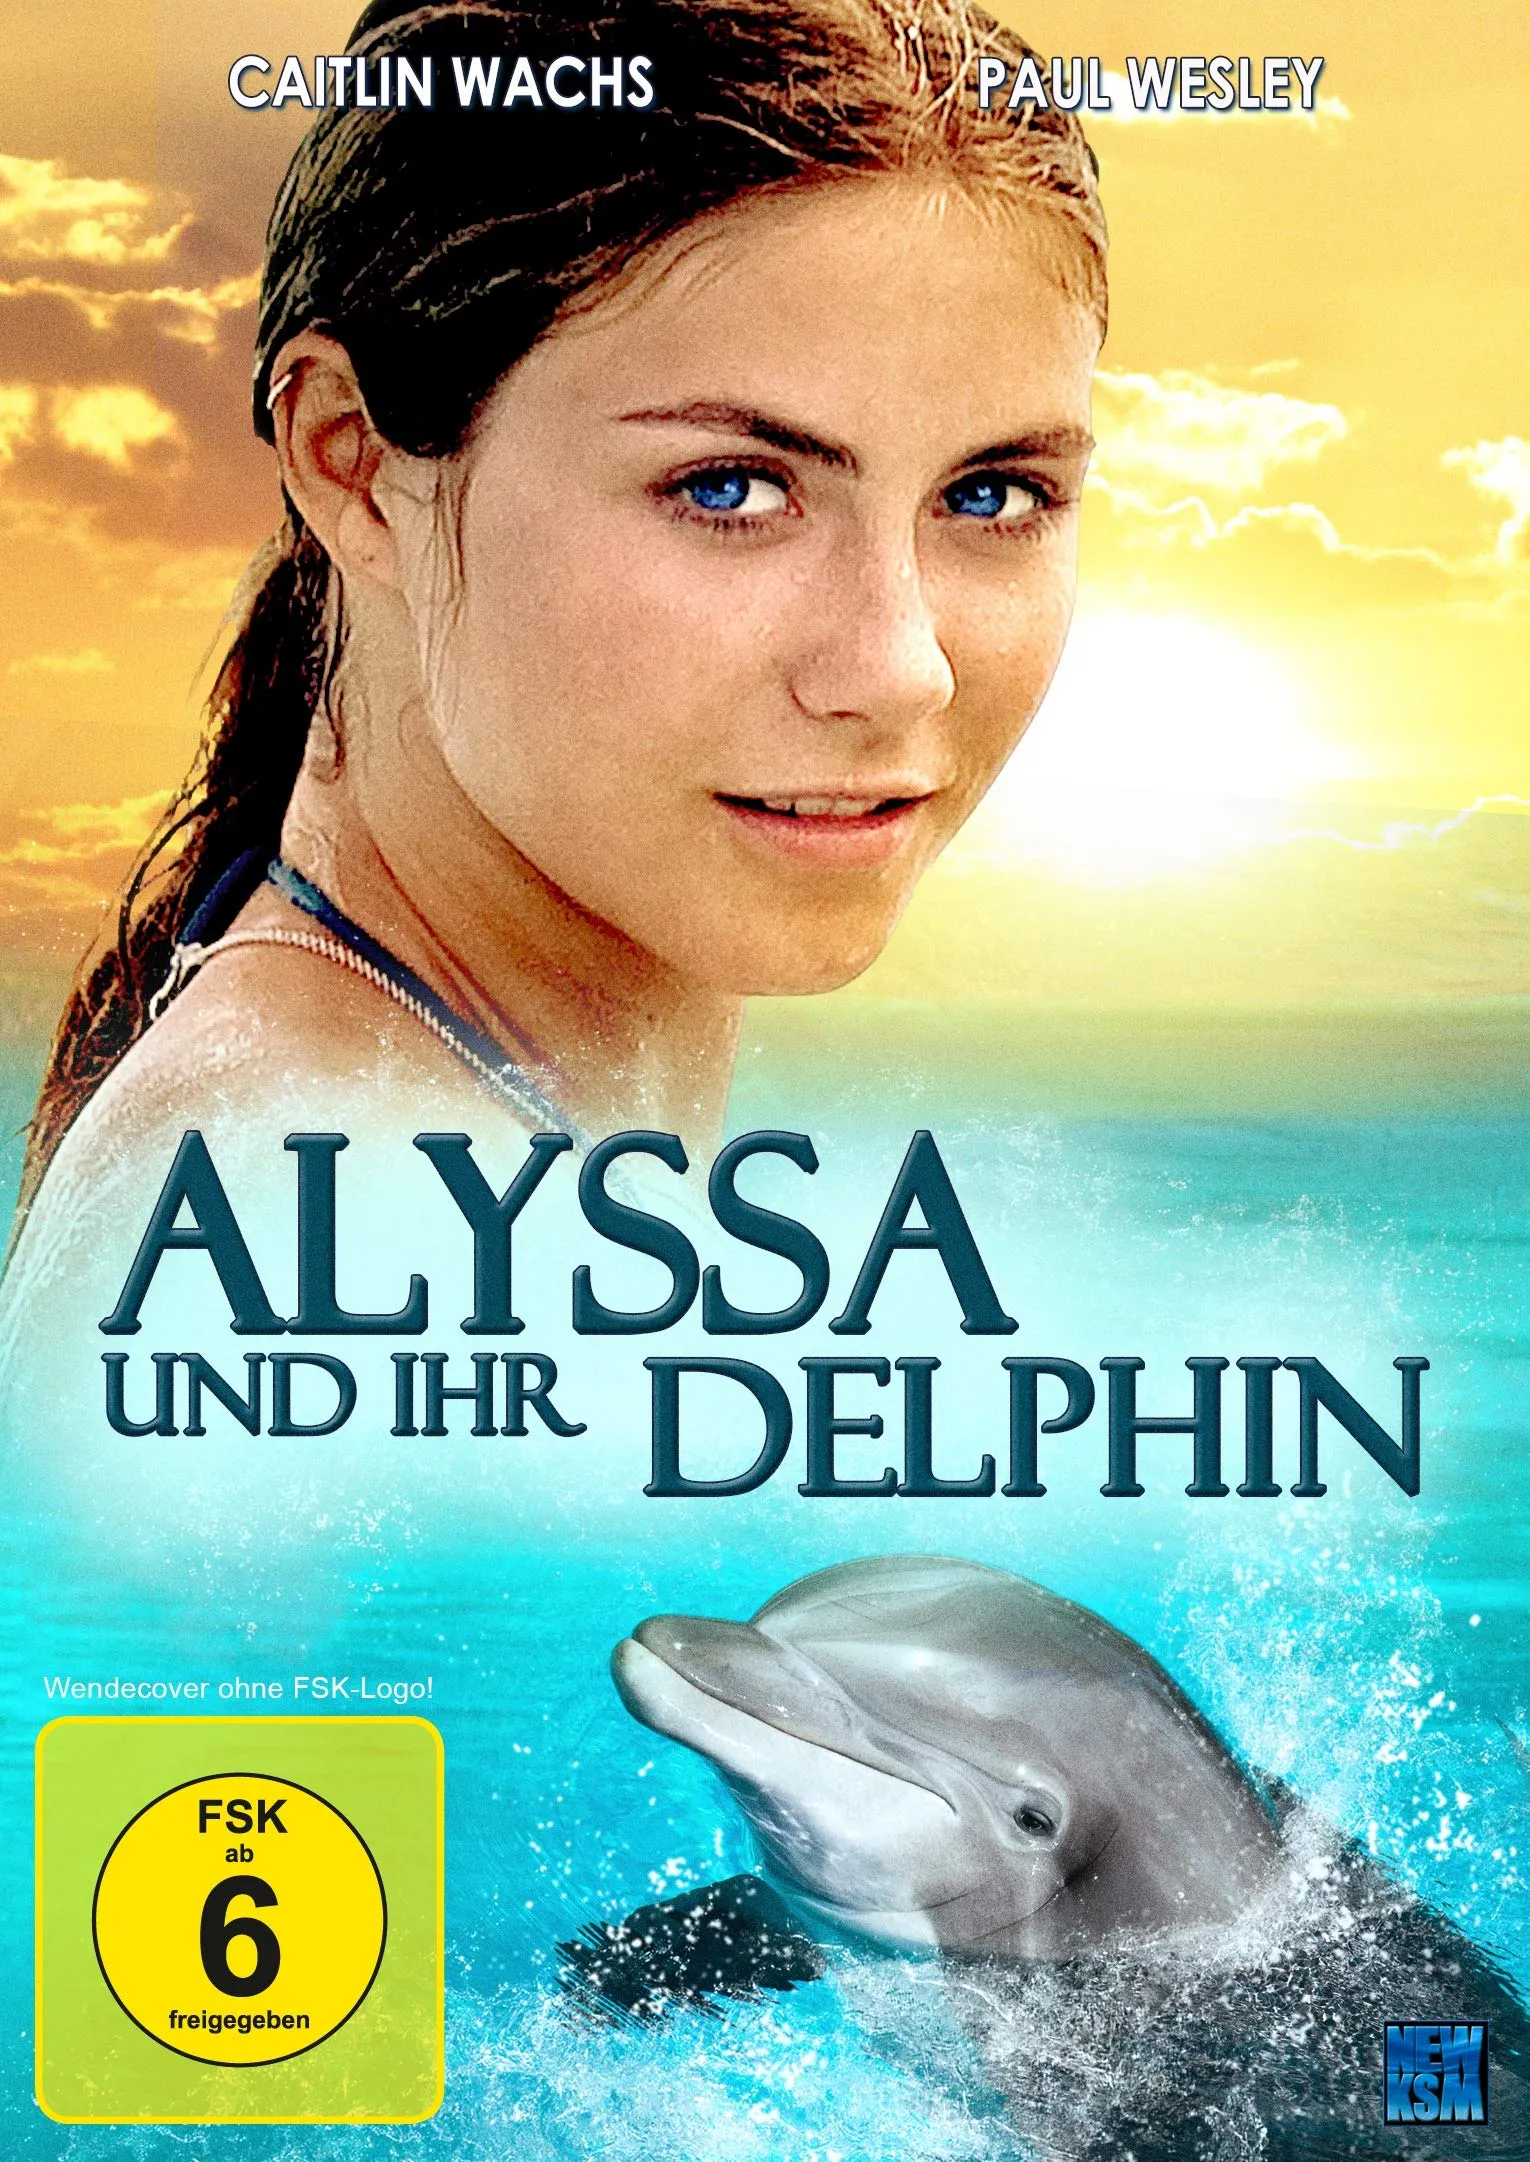 Alyssa und ihr Delphin (Neu differenzbesteuert)